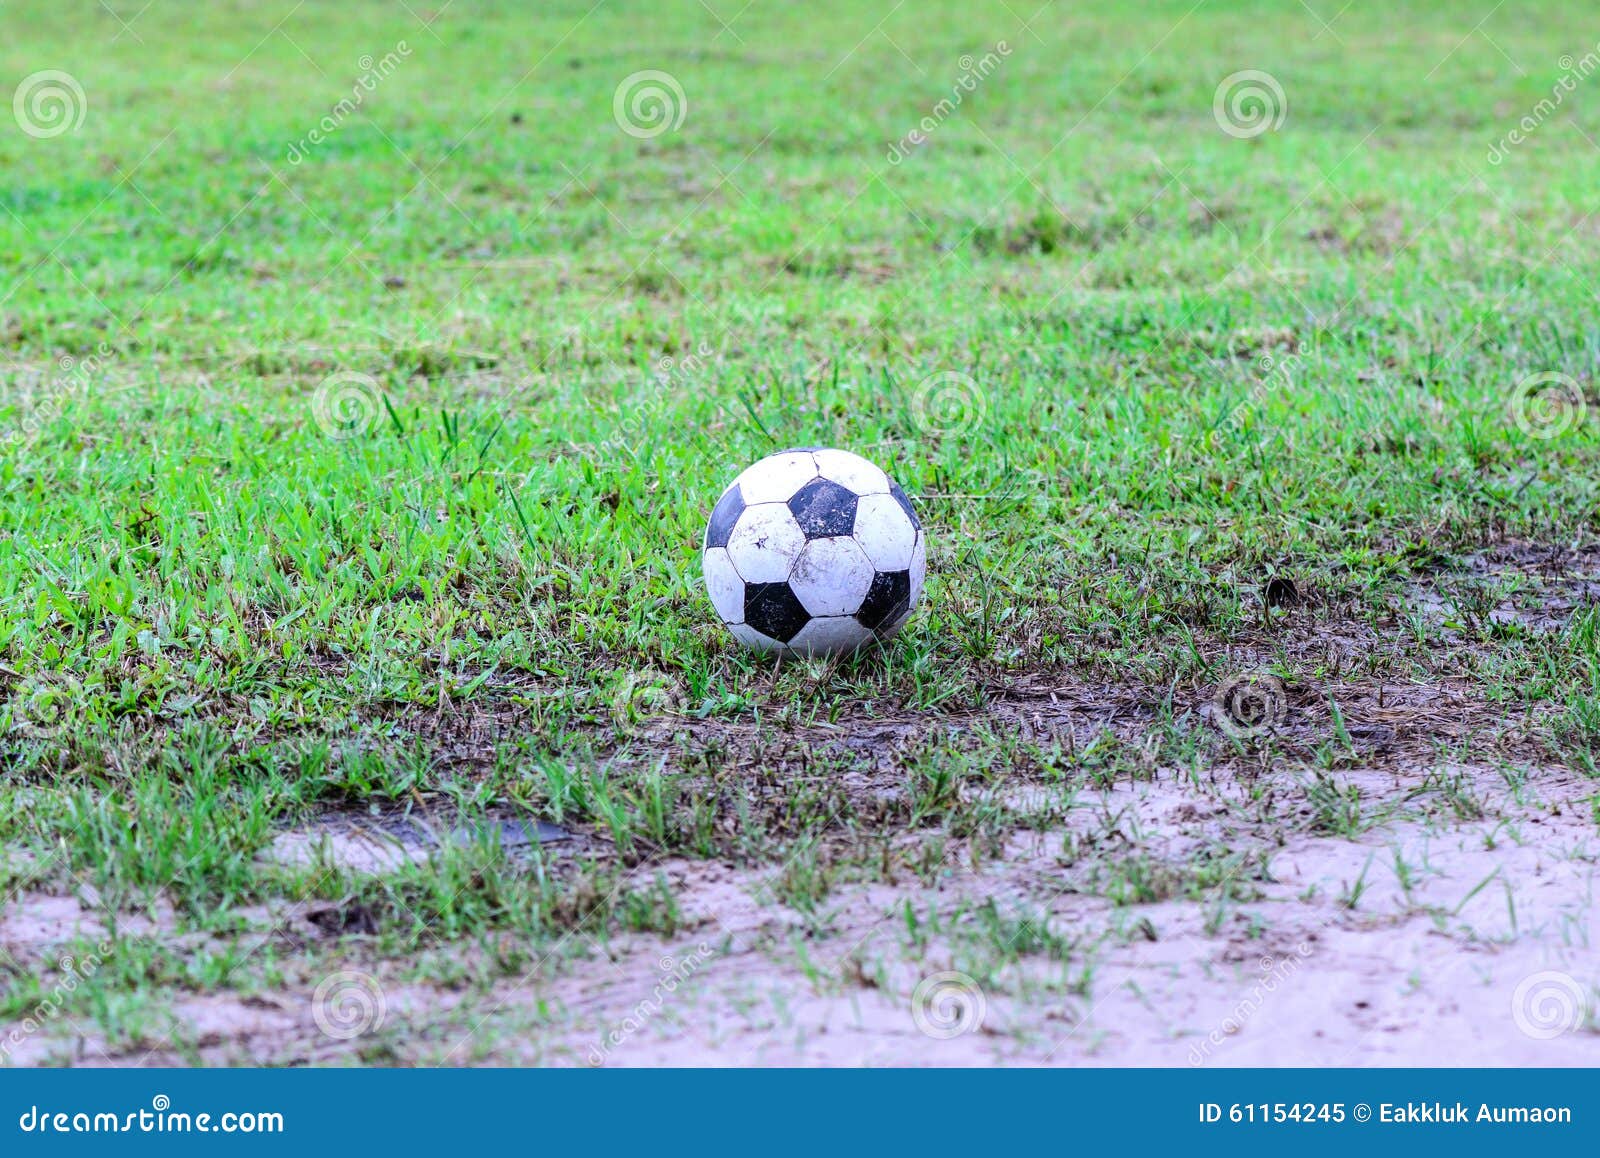 dirty soccer ball in wet field